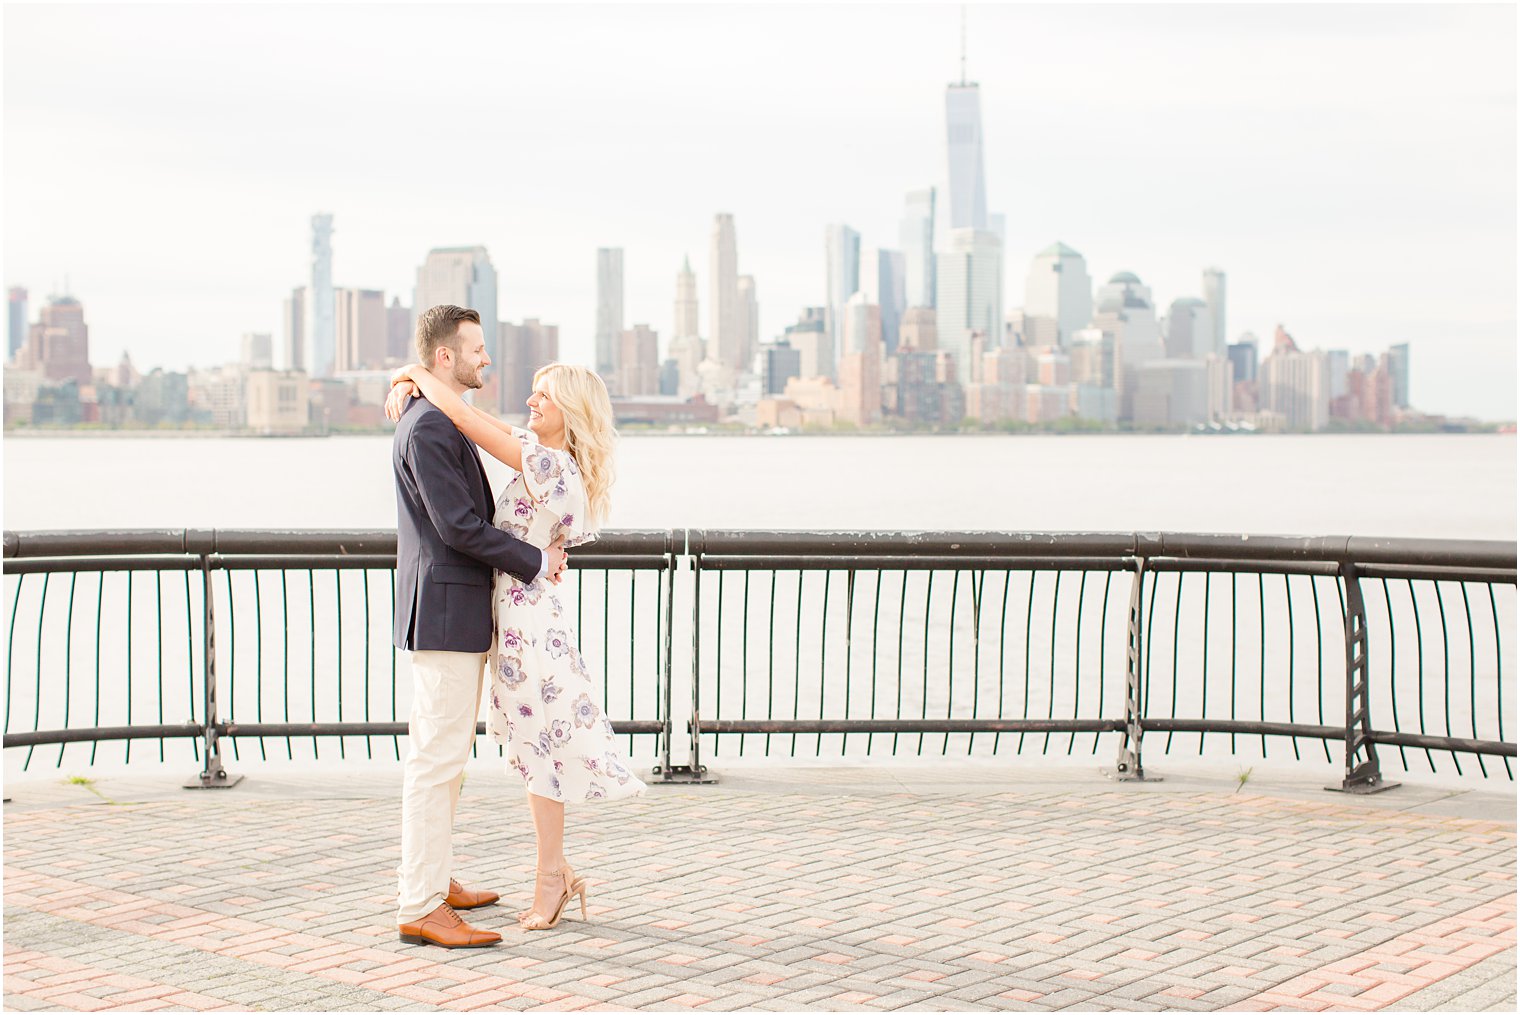 Engagement photo in Hoboken, NJ